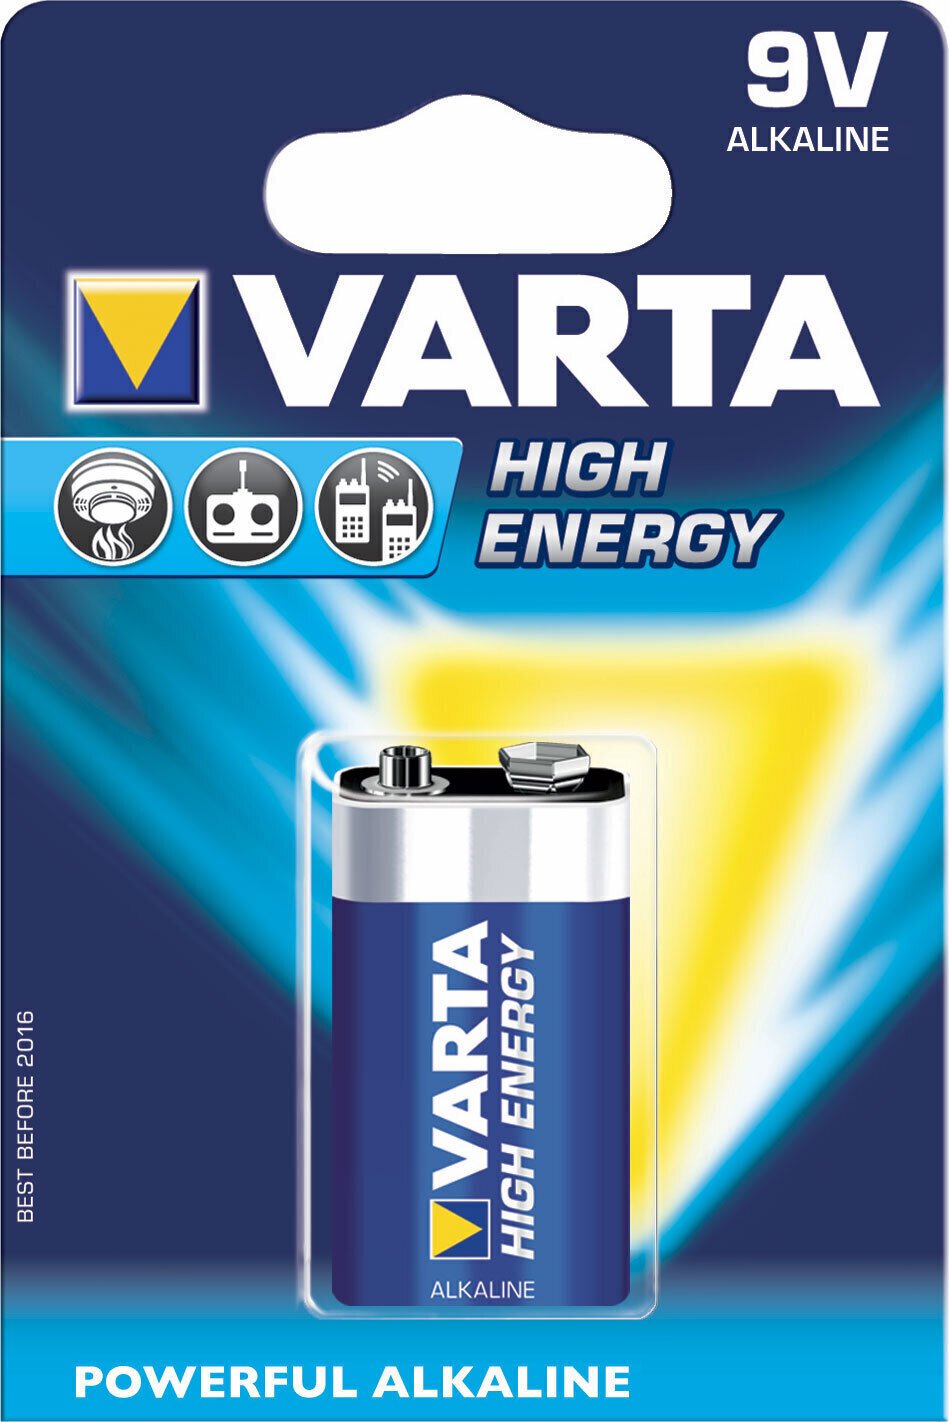 9V Bateria Varta 9V Bateria 6F22 High Energy